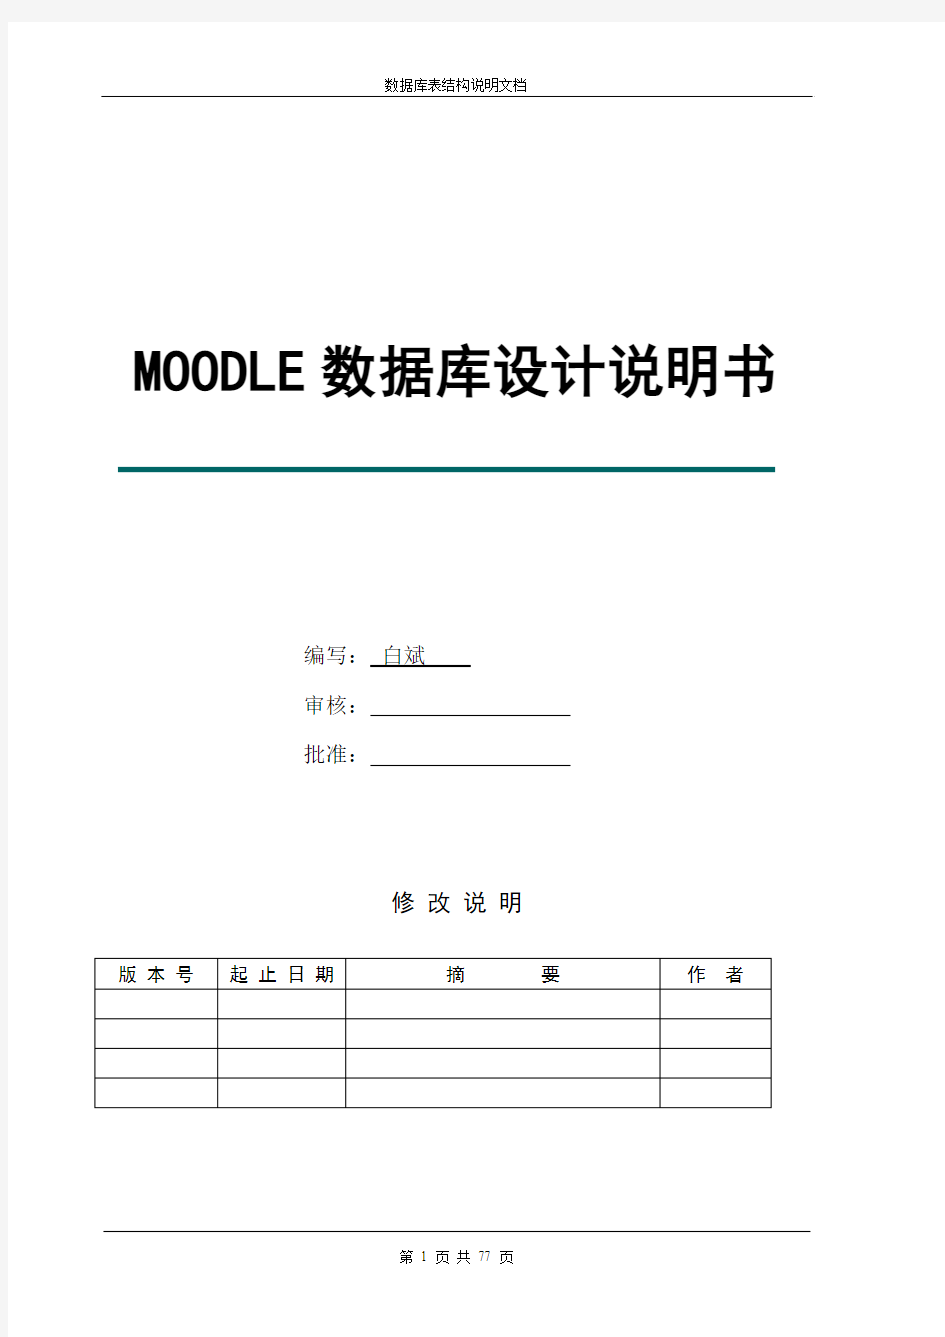 Moodle系统数据库设计说明书